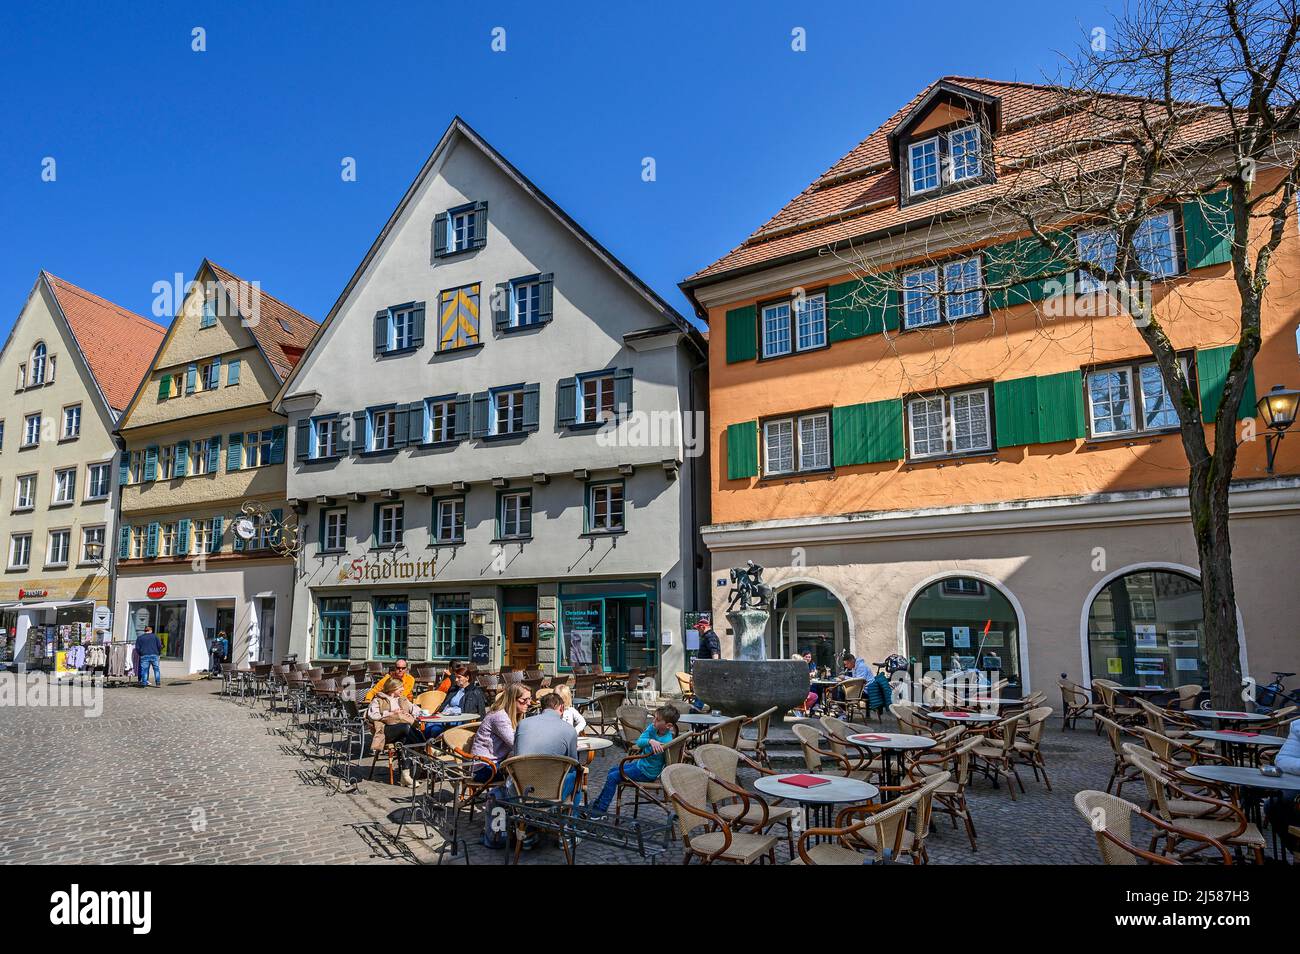 Spitzgibelfassaden, Restaurant Stadtwirt, Marktstrasse, Leutkirch, Allgaeu, Baden-Wuerttemberg, Deutschland Stock Photo